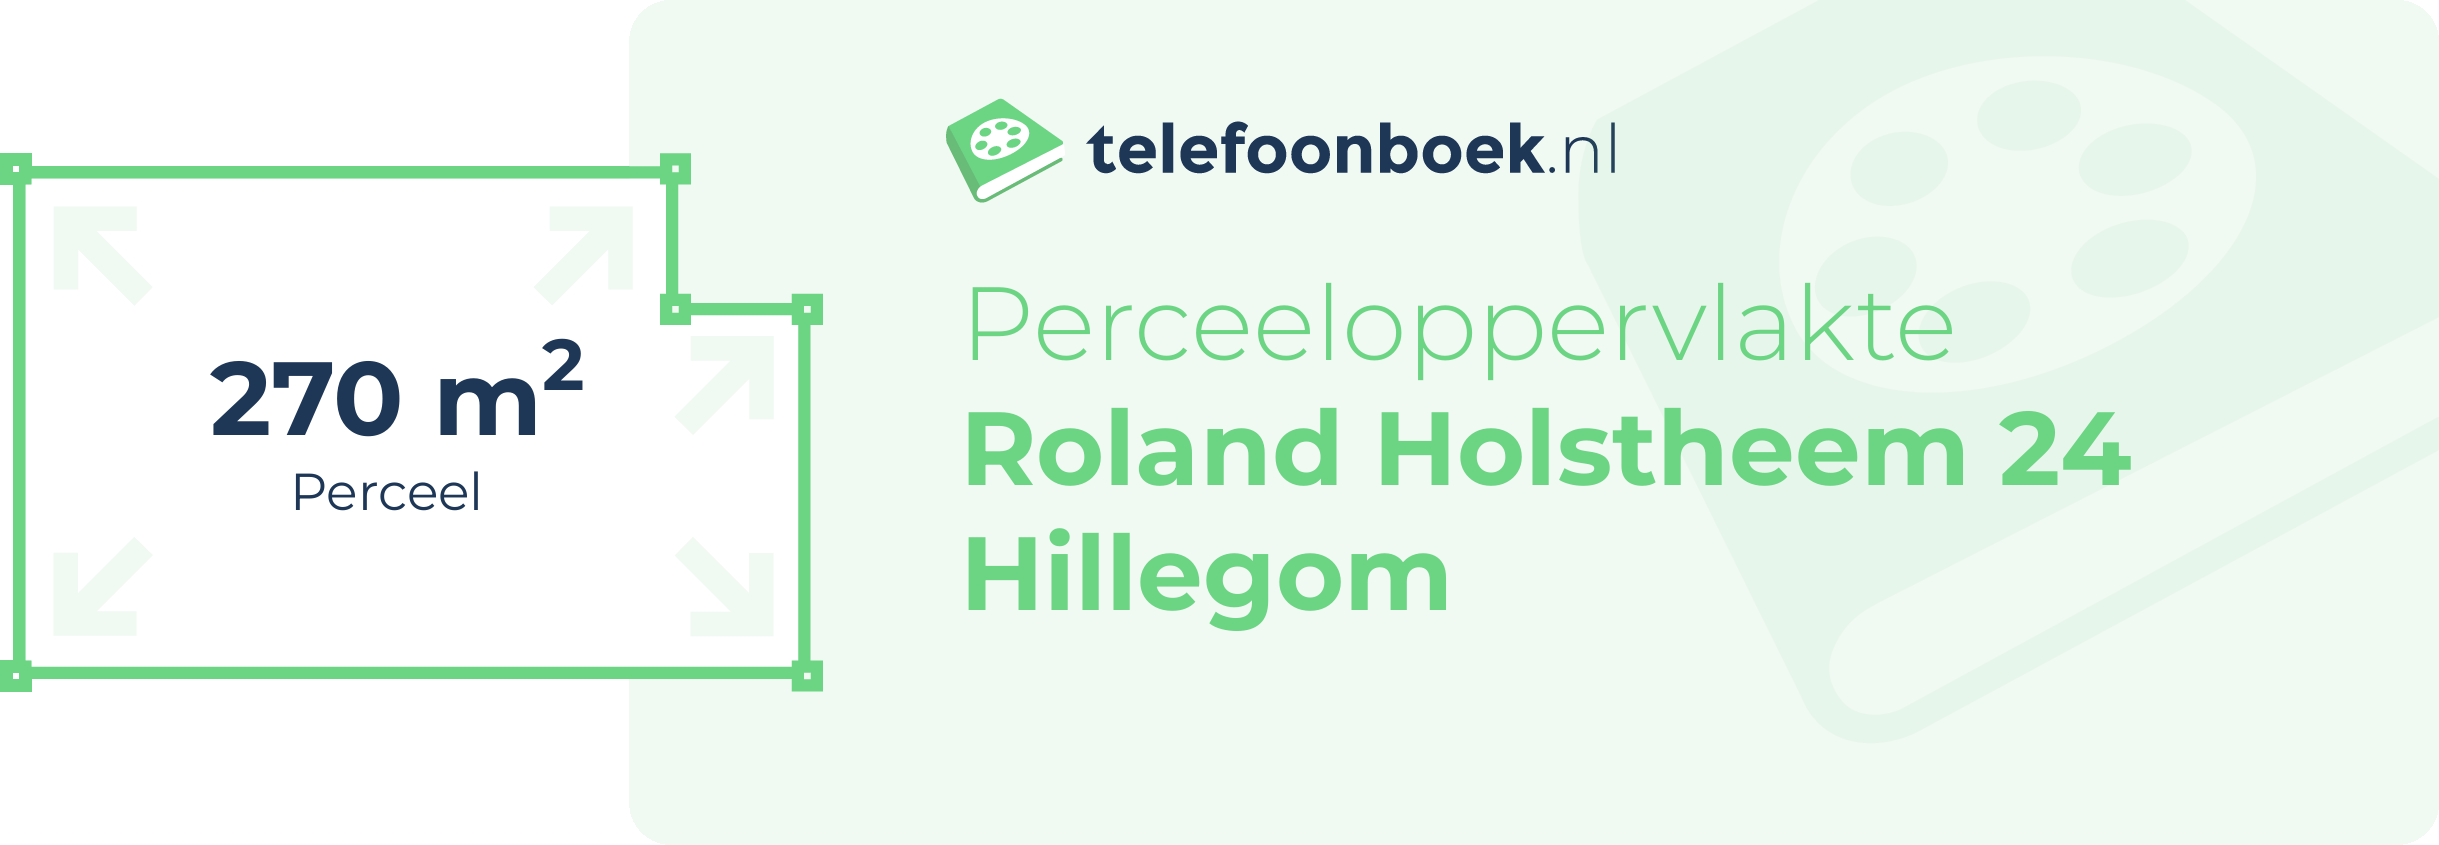 Perceeloppervlakte Roland Holstheem 24 Hillegom